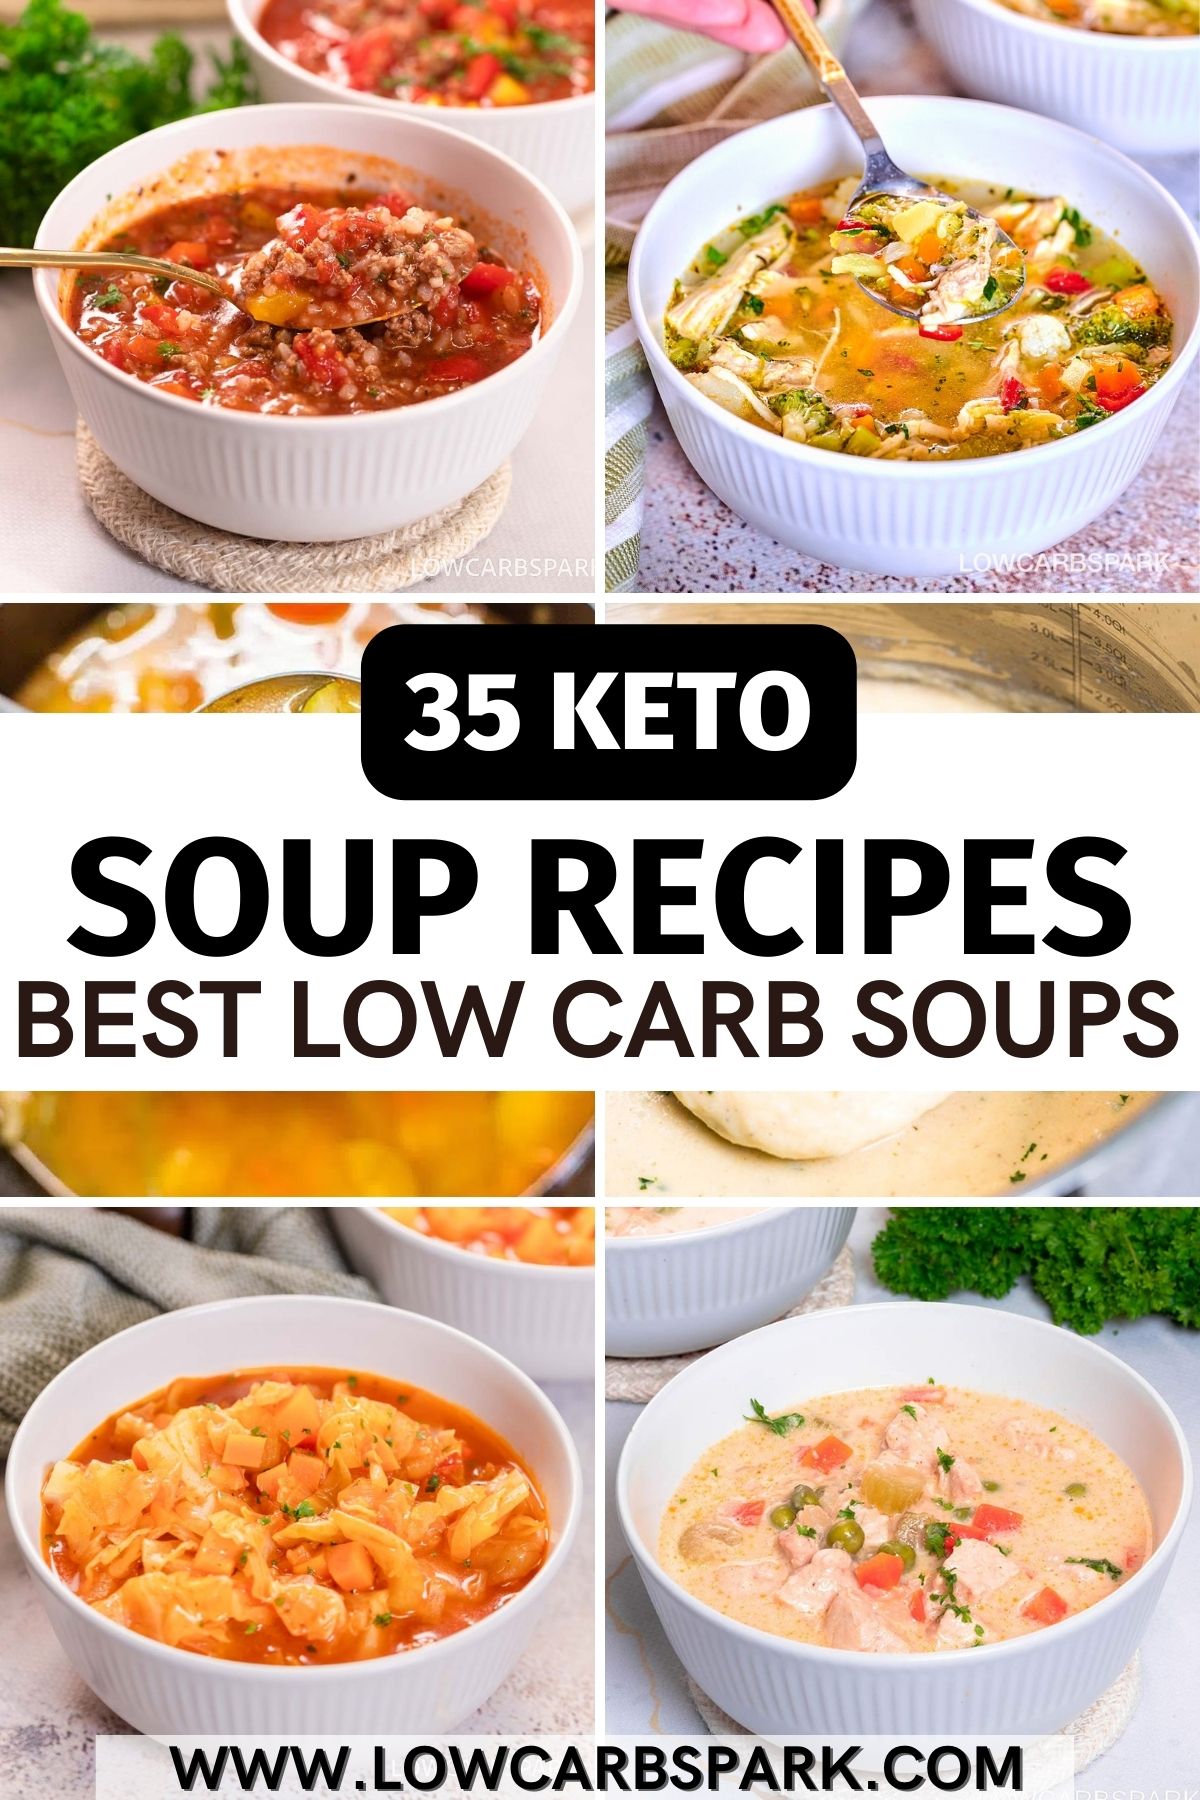 35 Keto Soup Recipes - Best Low Carb Soups